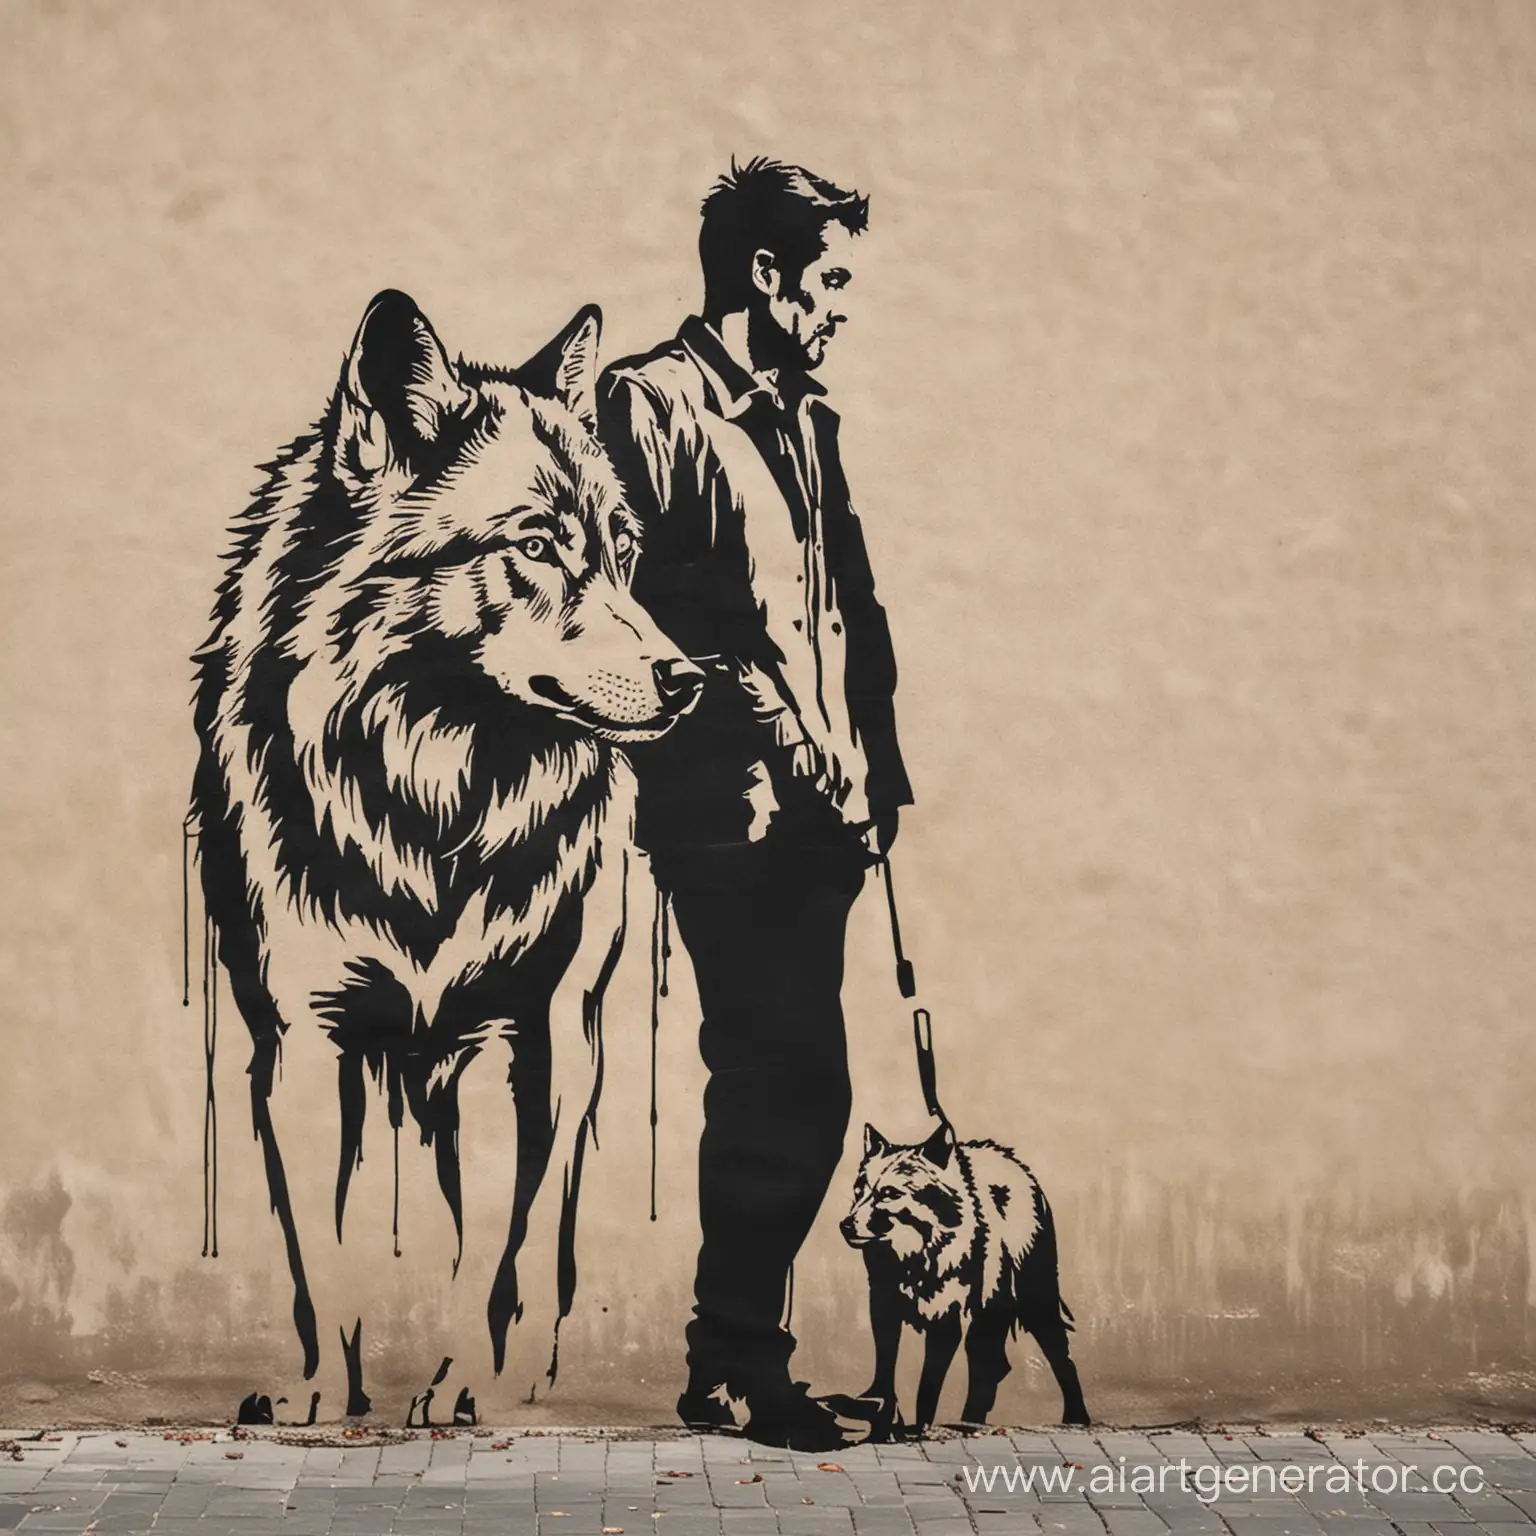 Urban-Street-Art-Man-with-Wolf-Stencil